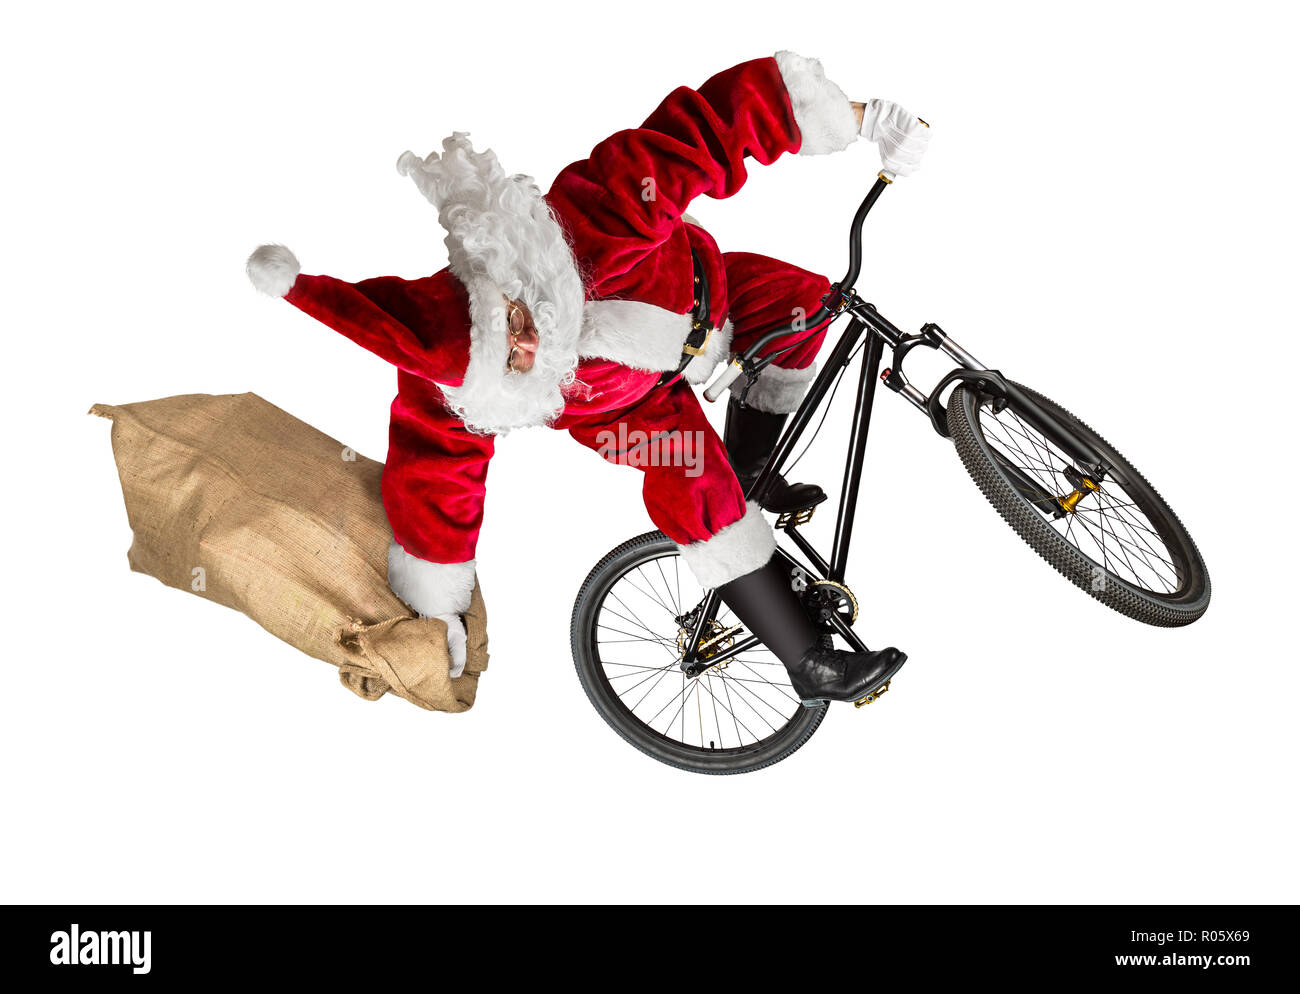 Le père Noël fou saute sur dirt vtt avec sac de toile de jute résumé isolé sur fond blanc sport drôle de Noël Banque D'Images